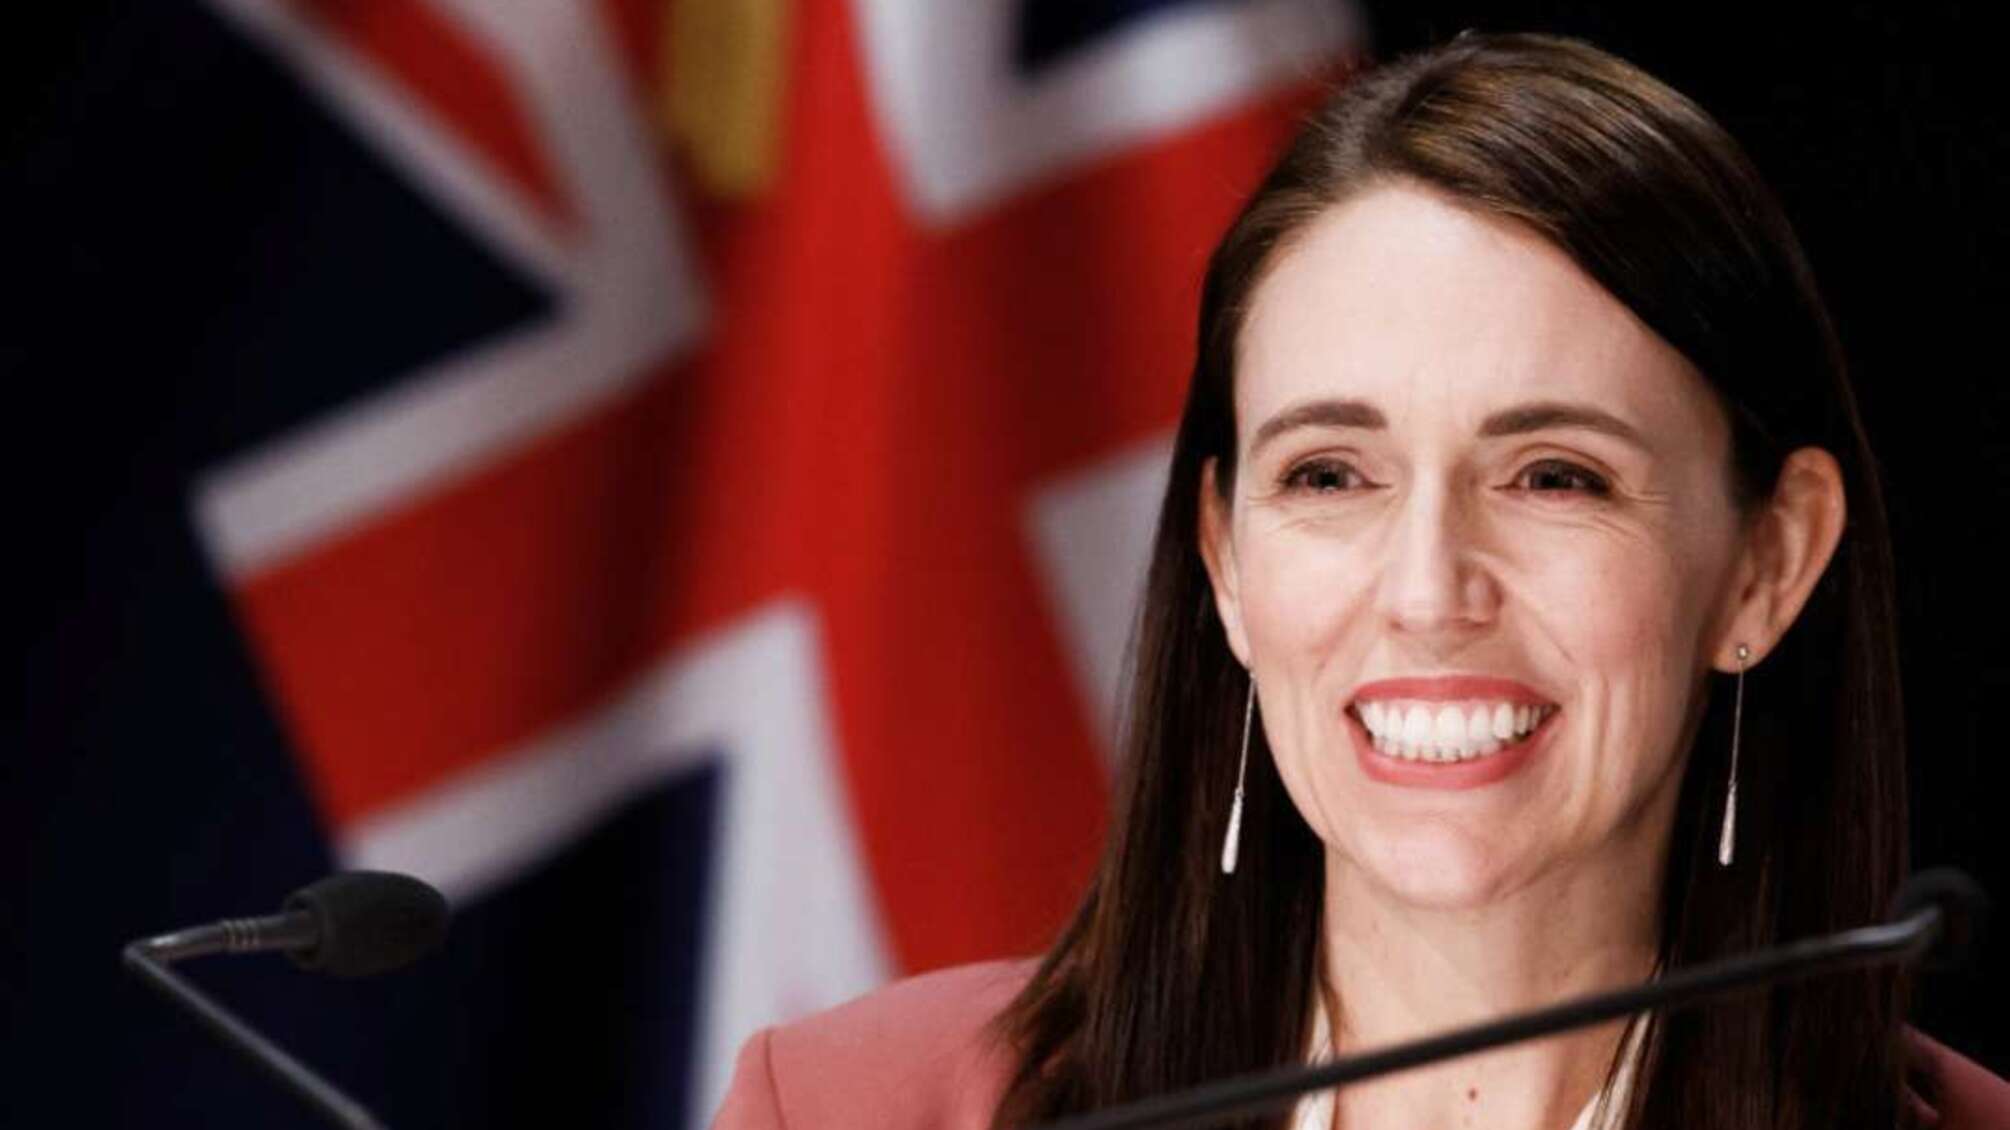 Прем'єрка Нової Зеландії під час своєї промови запропонувала хлопцеві одружитися (відео)